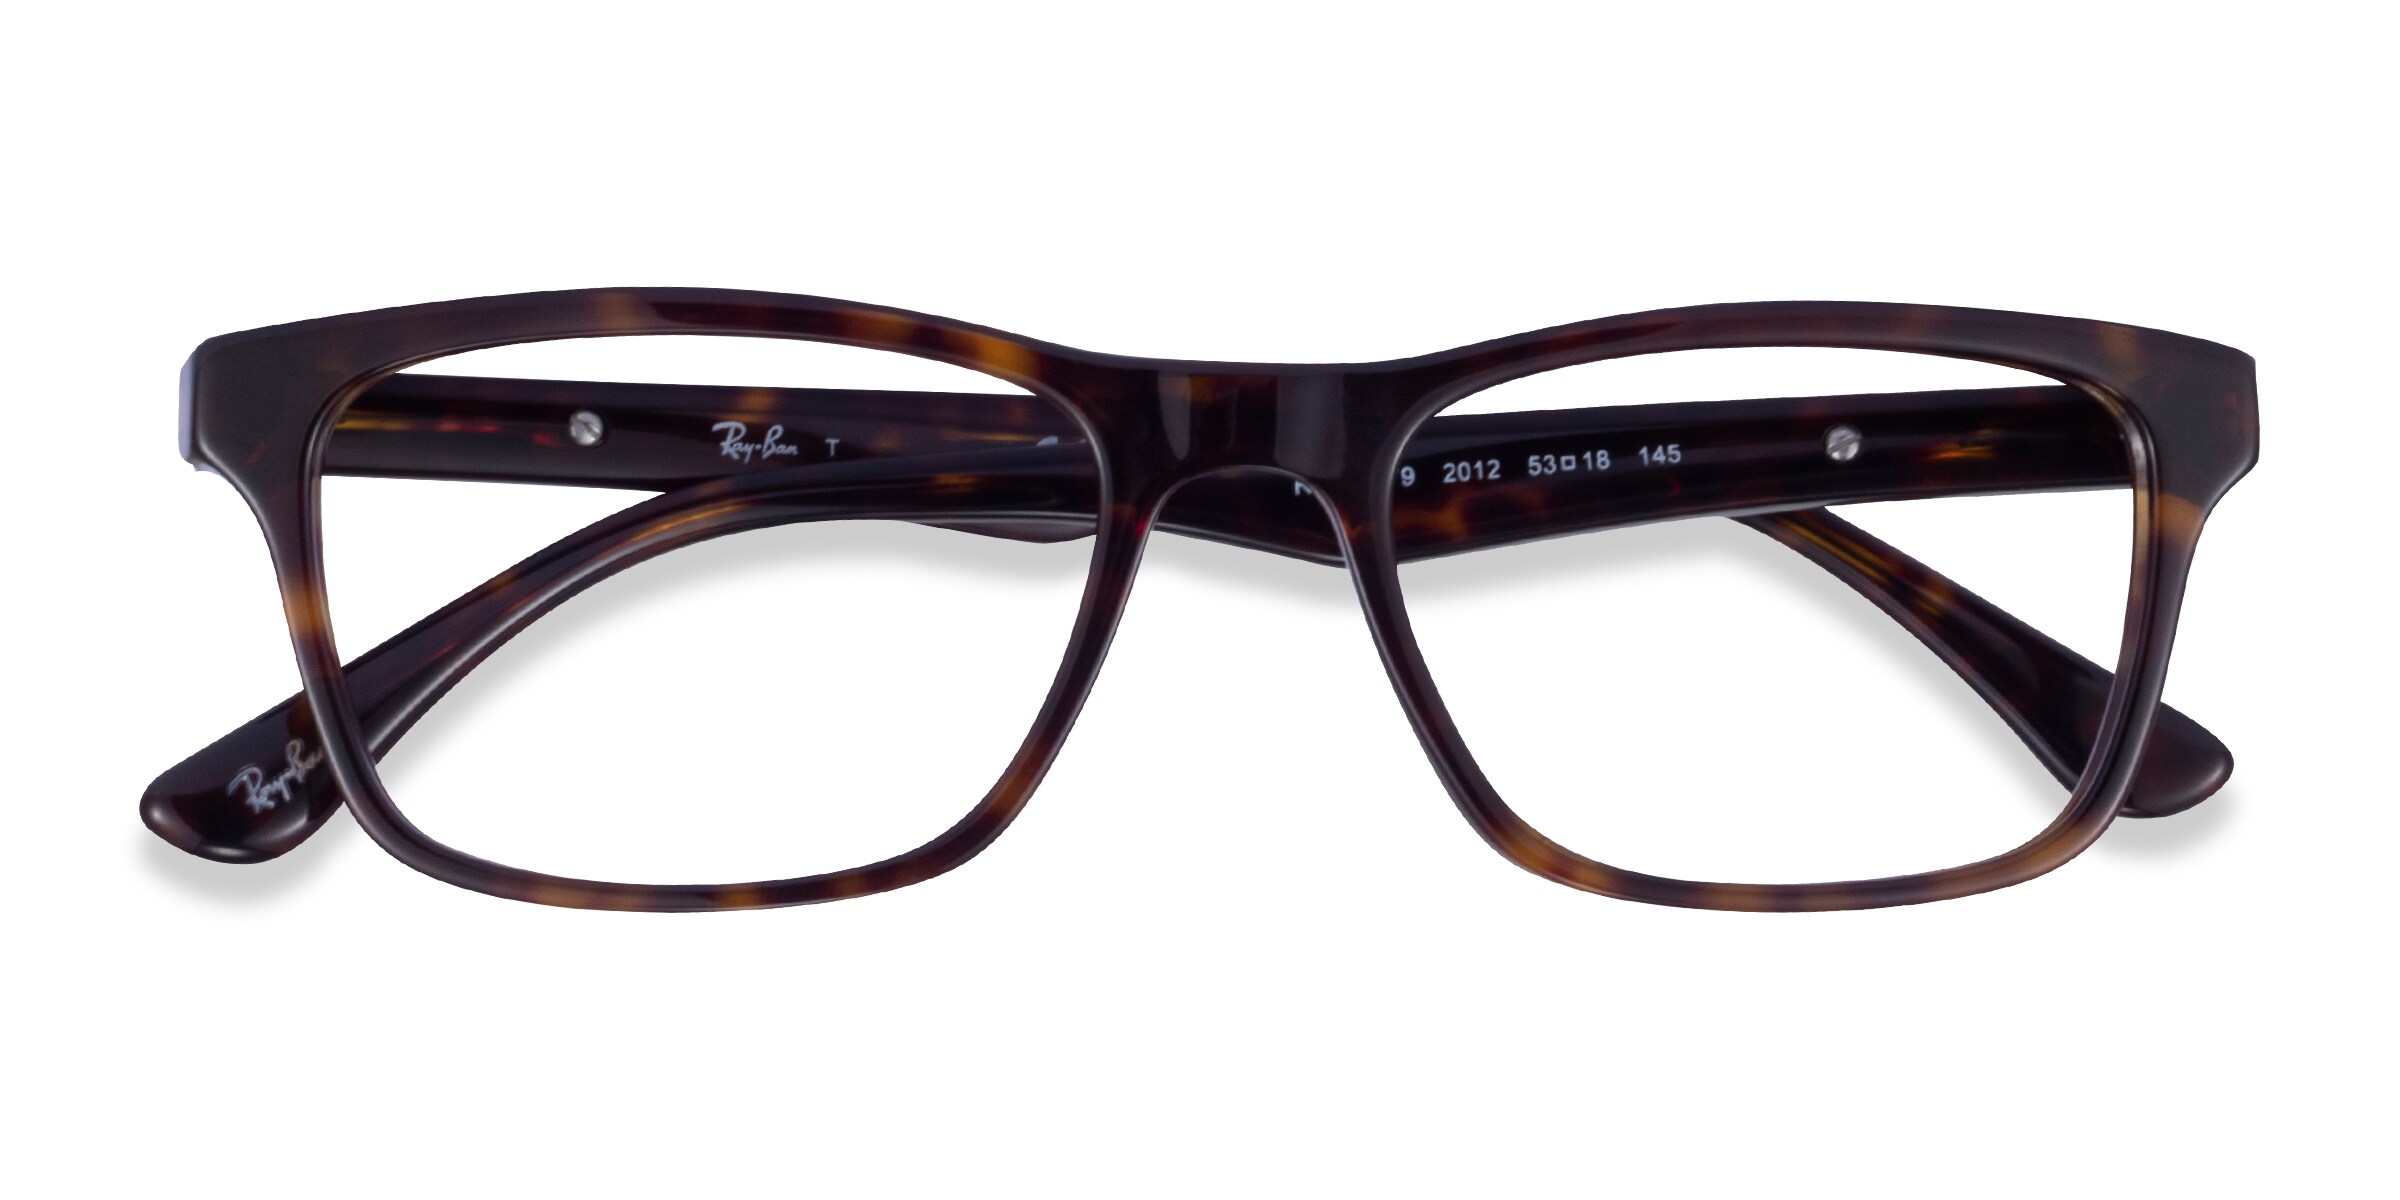 Ray-Ban RB5279 - Rectangle Dark Tortoise Frame Eyeglasses 